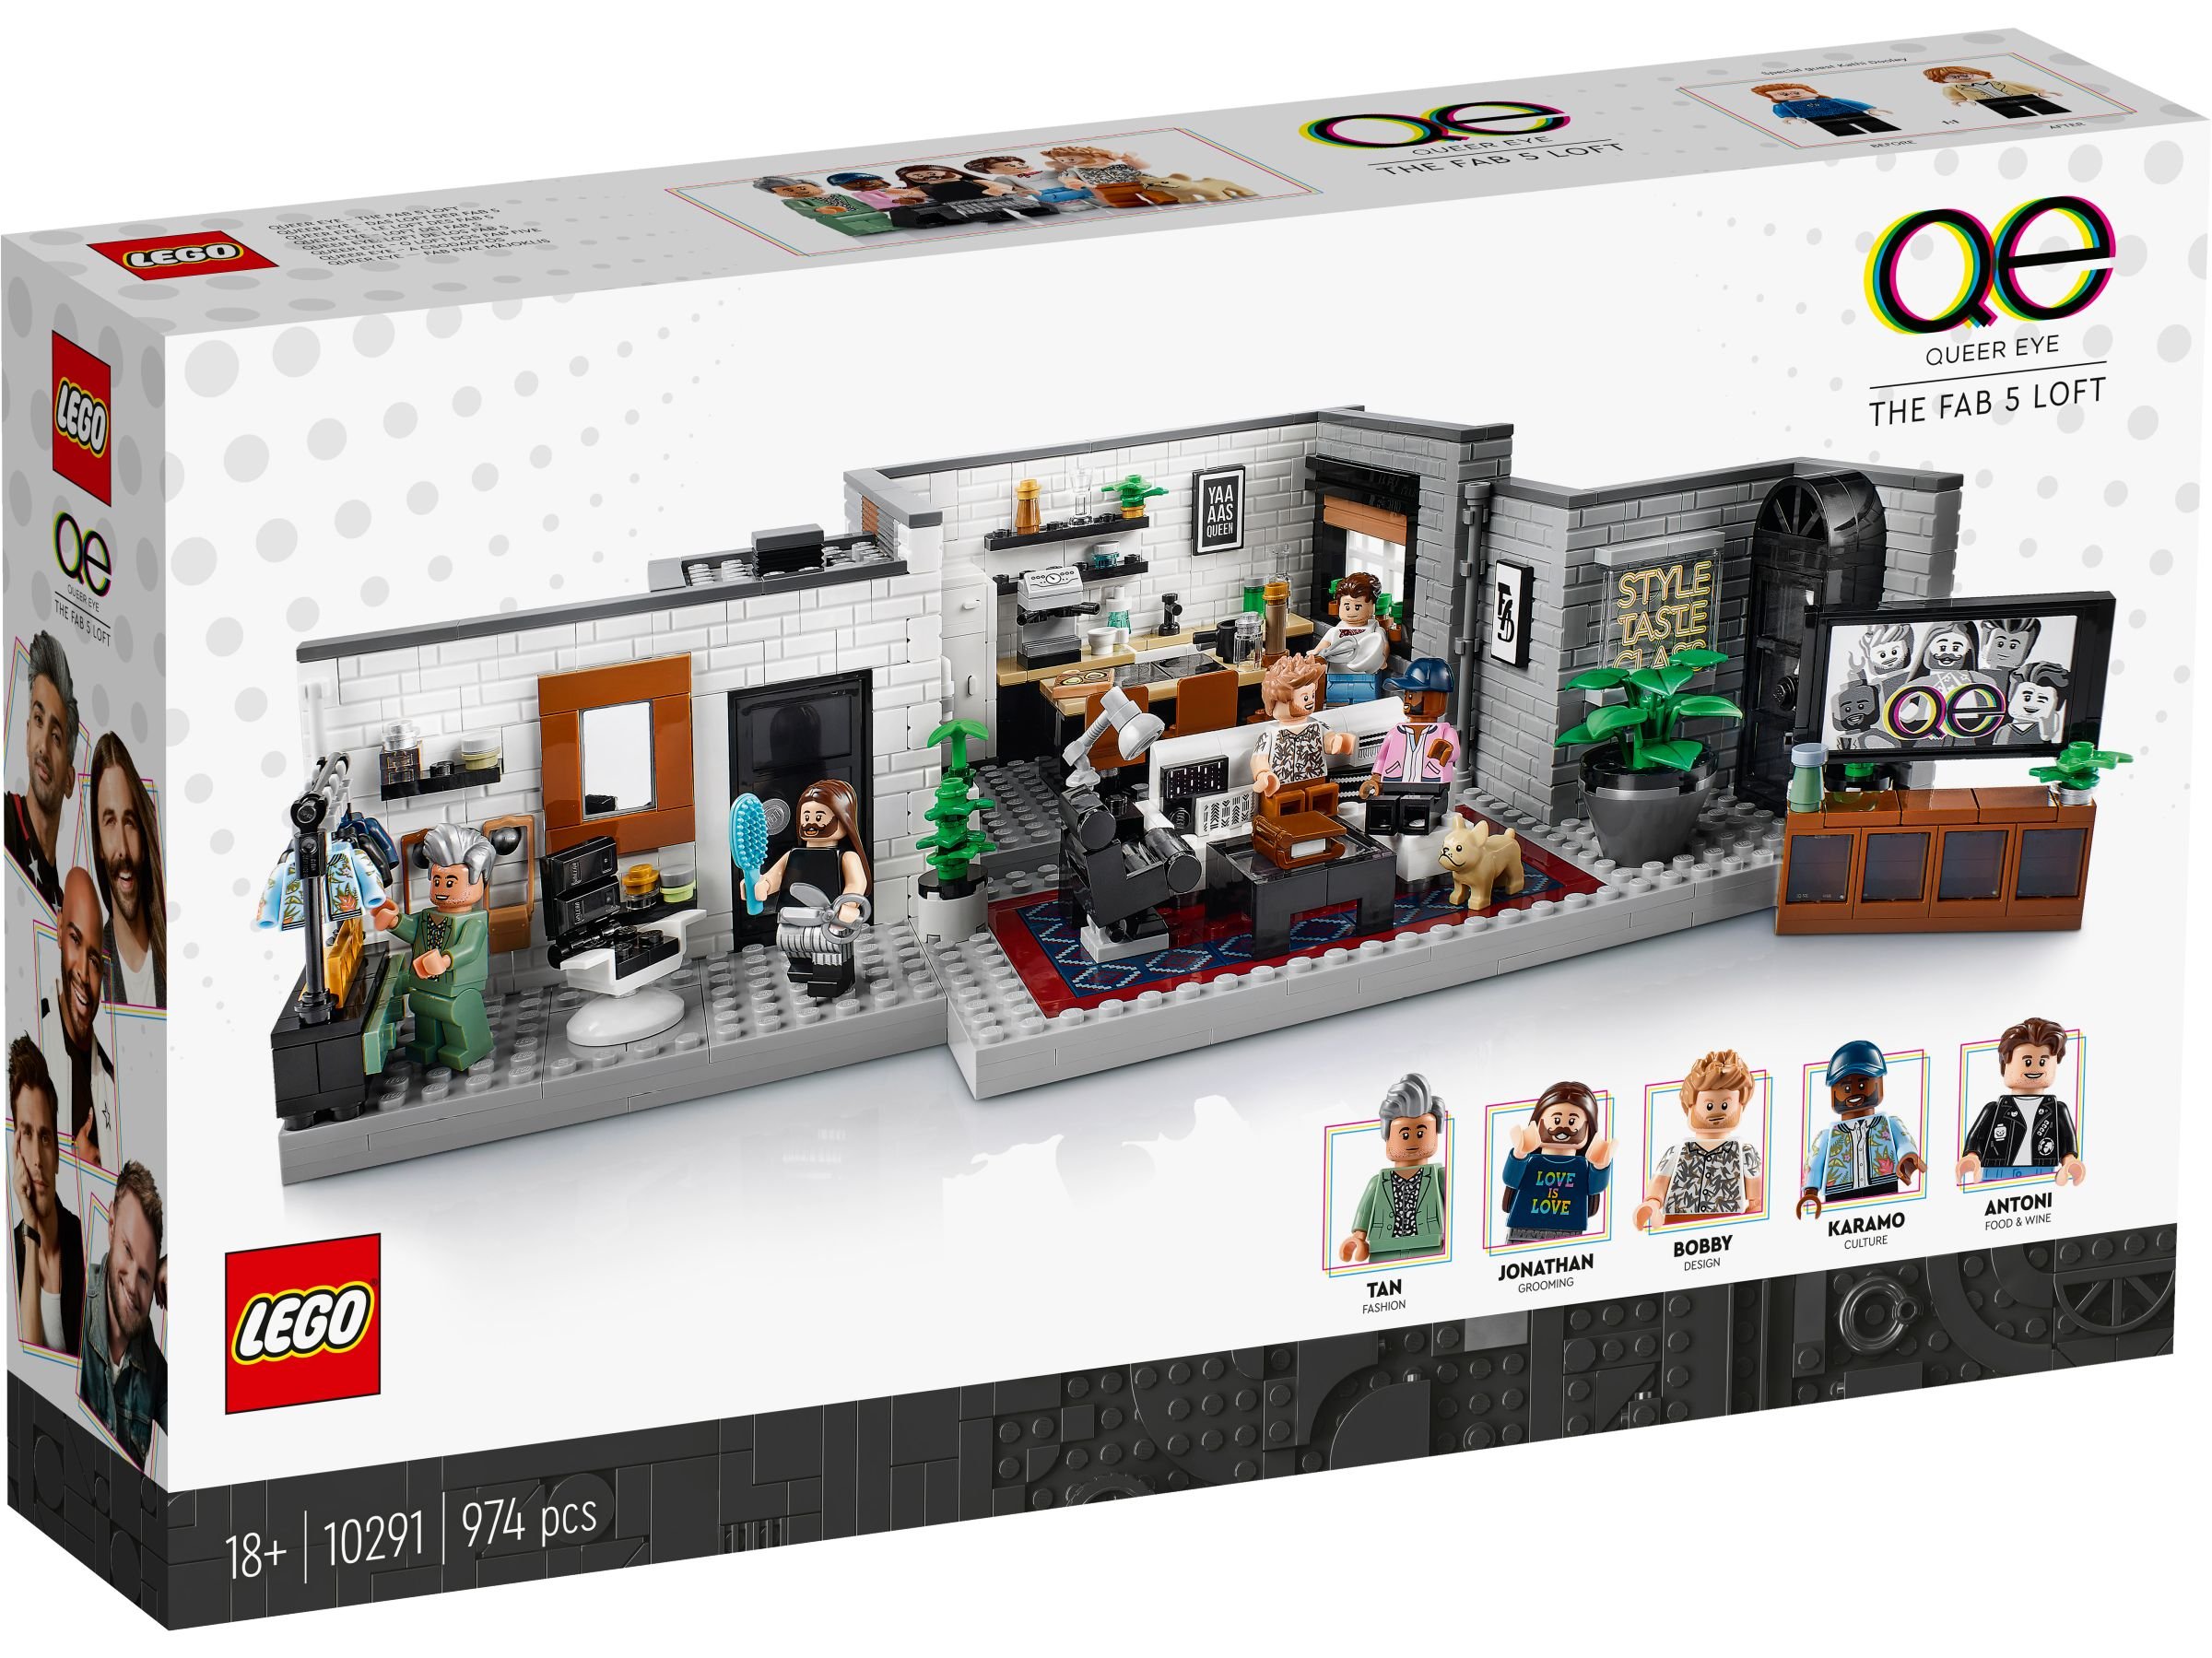 LEGO Advanced Models 10291 Queer Eye – Das Loft der Fab 5 LEGO_10291_box1_v29.jpg